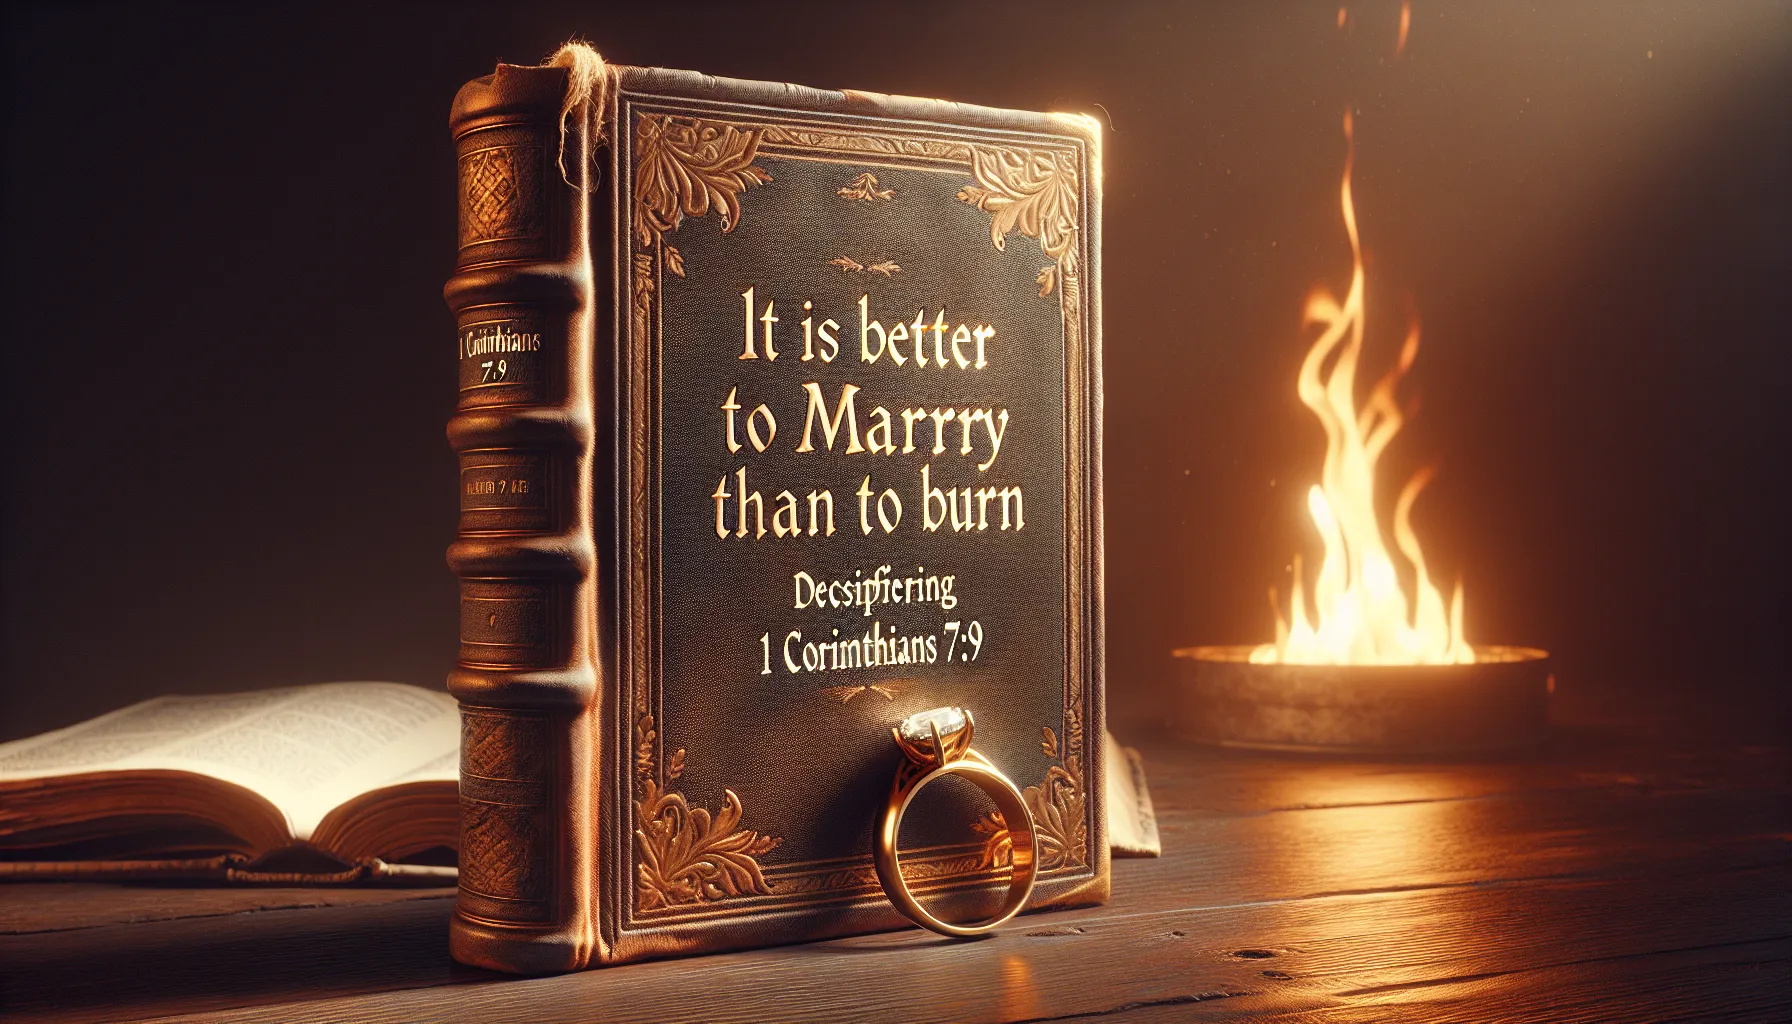 Imagen de portada del artículo titulado 'Es mejor casarse que quemarse: Descifrando 1 Corintios 7:9'.